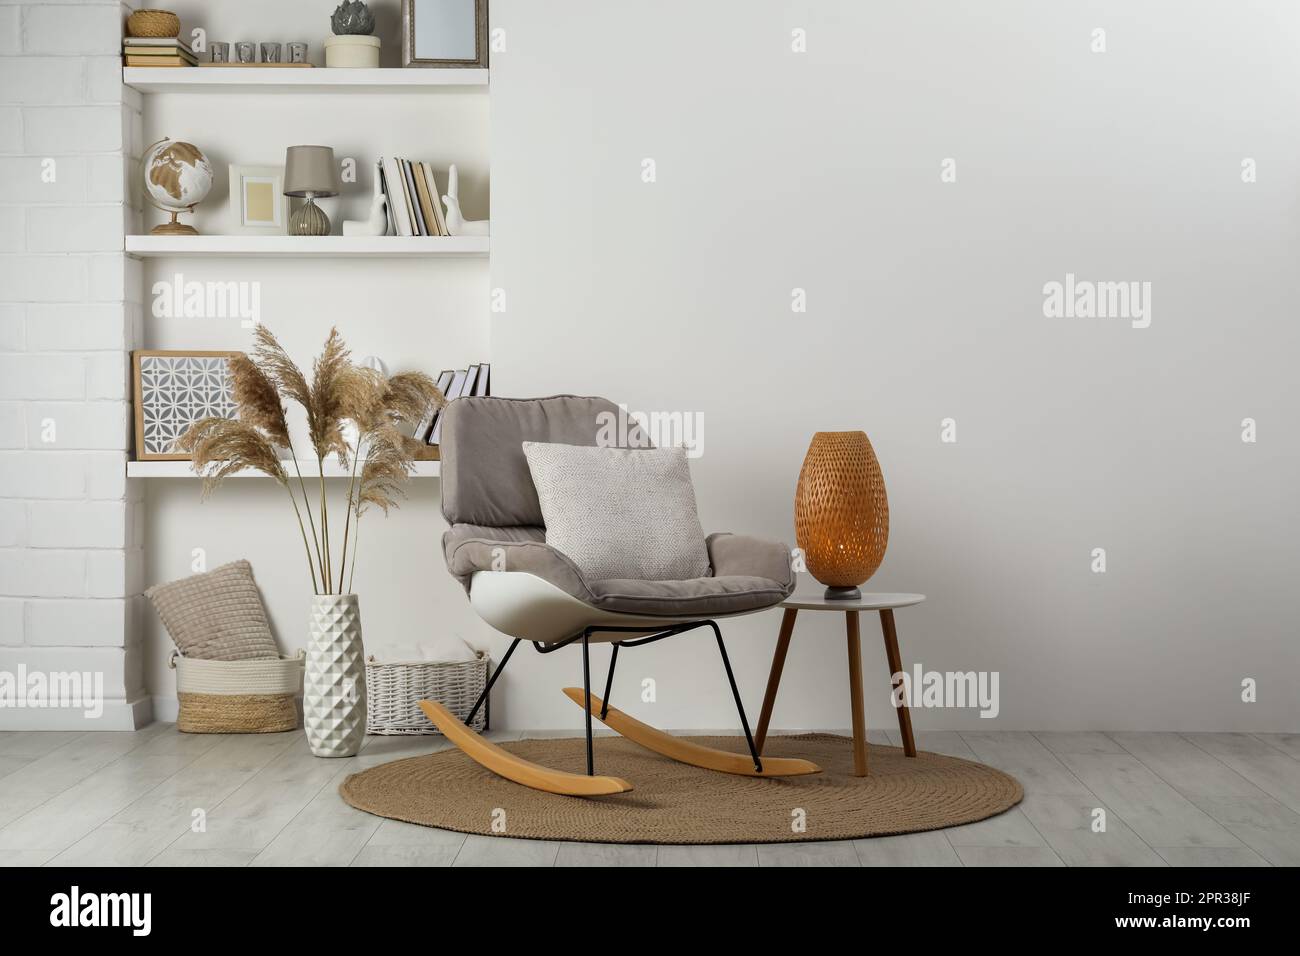 Weicher Schaukelstuhl mit Kissen auf Teppich nahe der Wand im Zimmer.  Innendesign Stockfotografie - Alamy